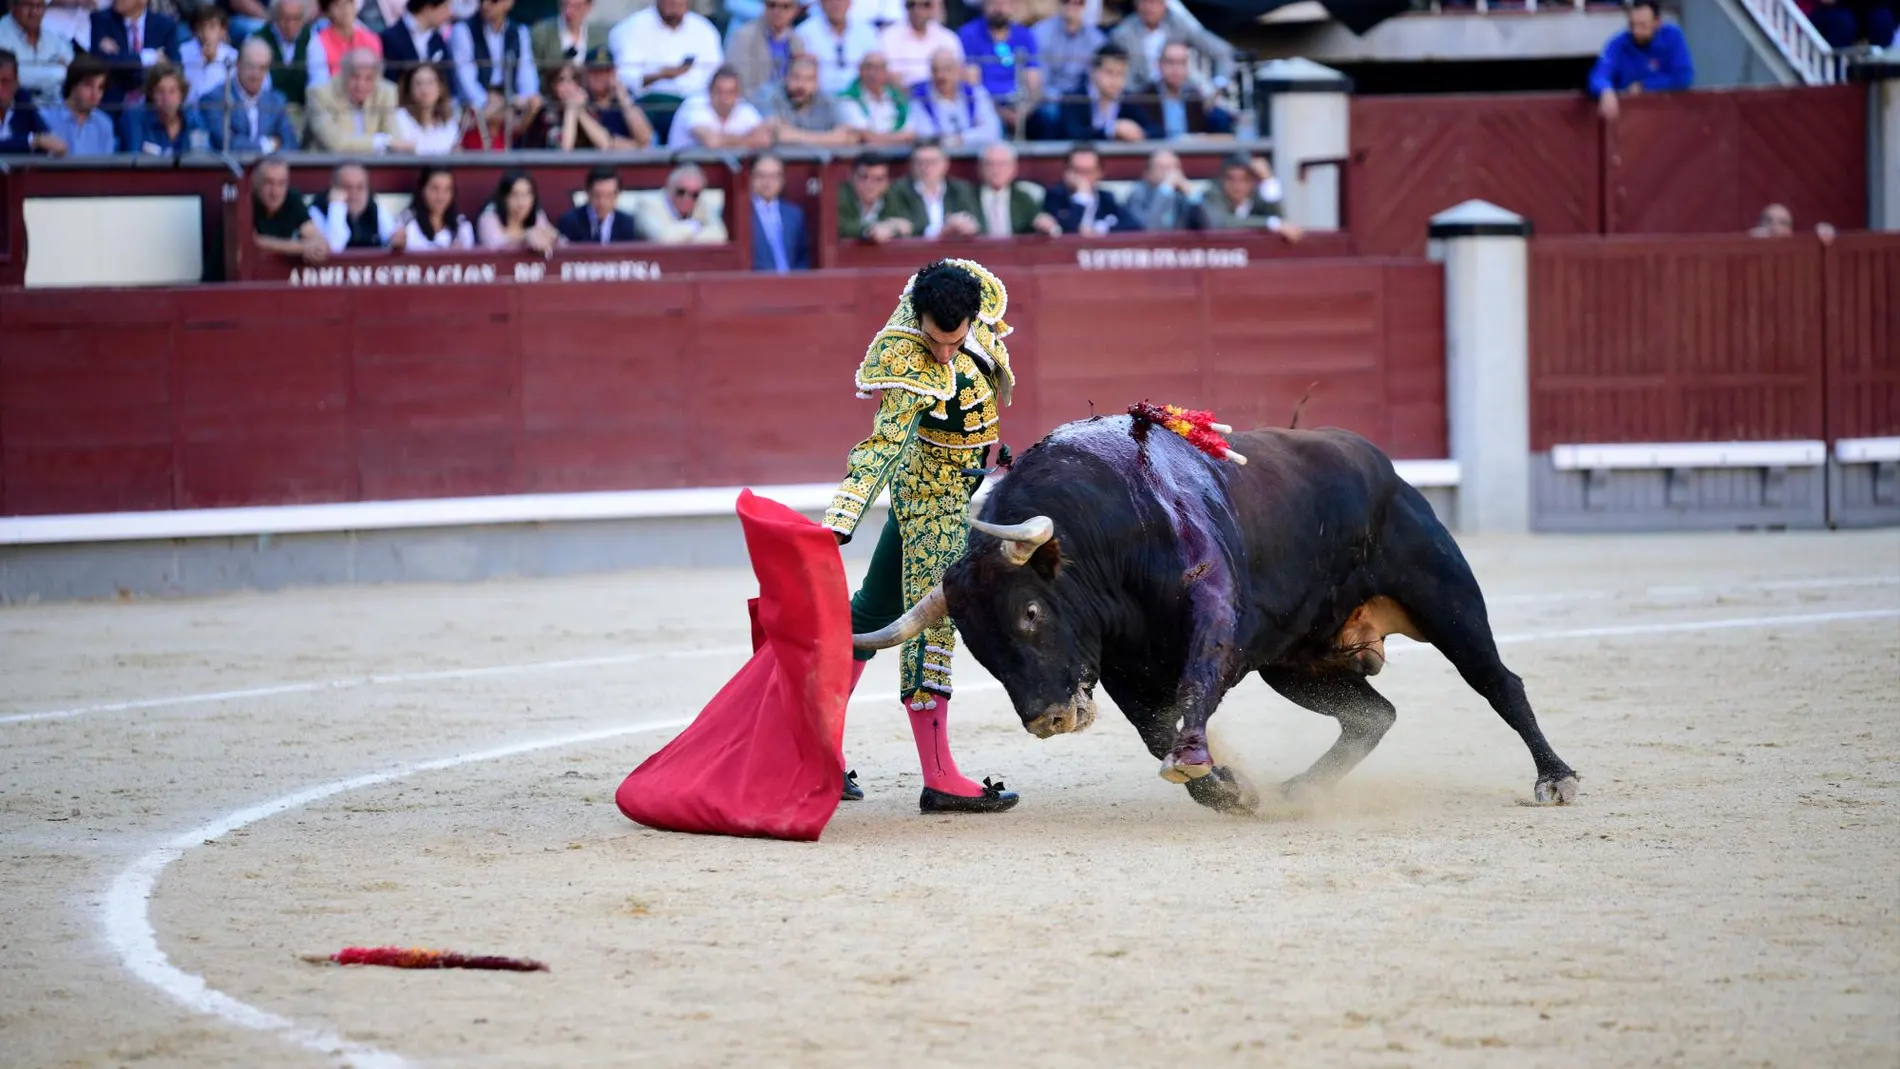 Morenito de Aranda en un derechazo hoy en Las Ventas a un toro de Fuente Ymbro / Foto: David Jar